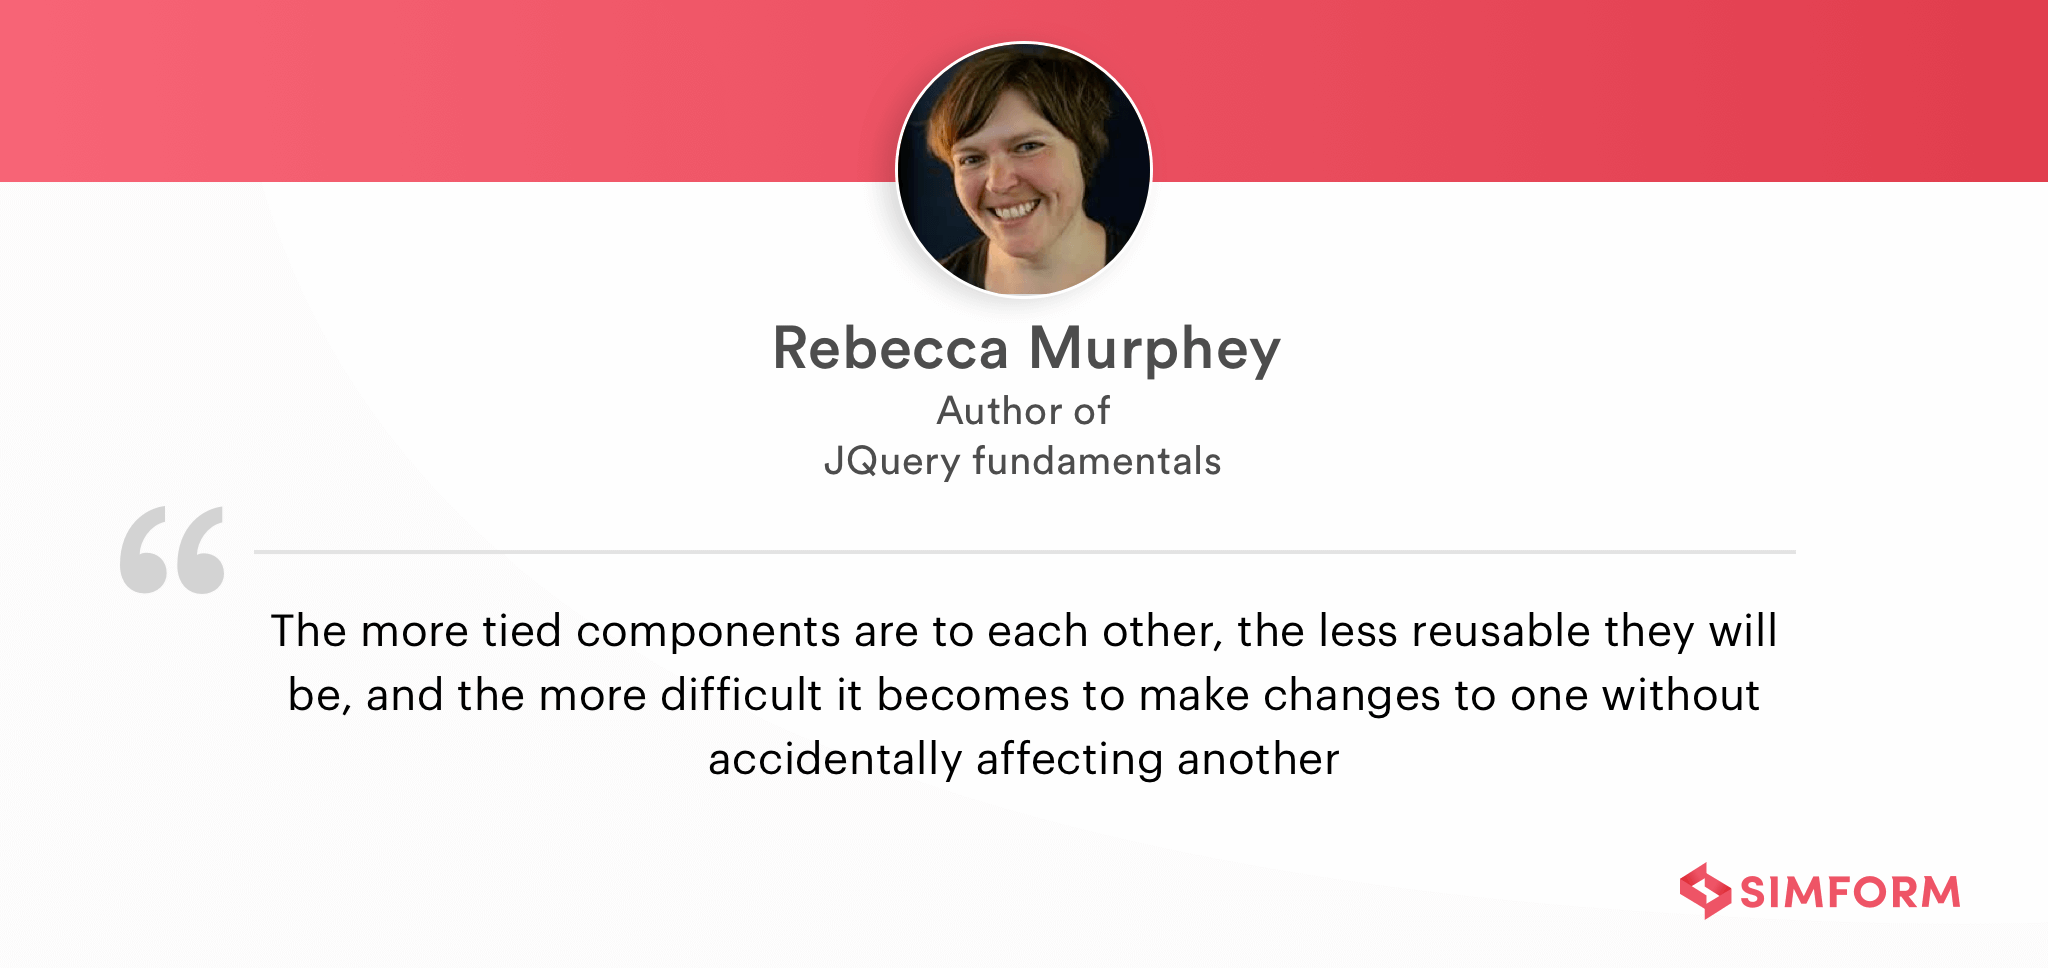 Rebecca Murphey